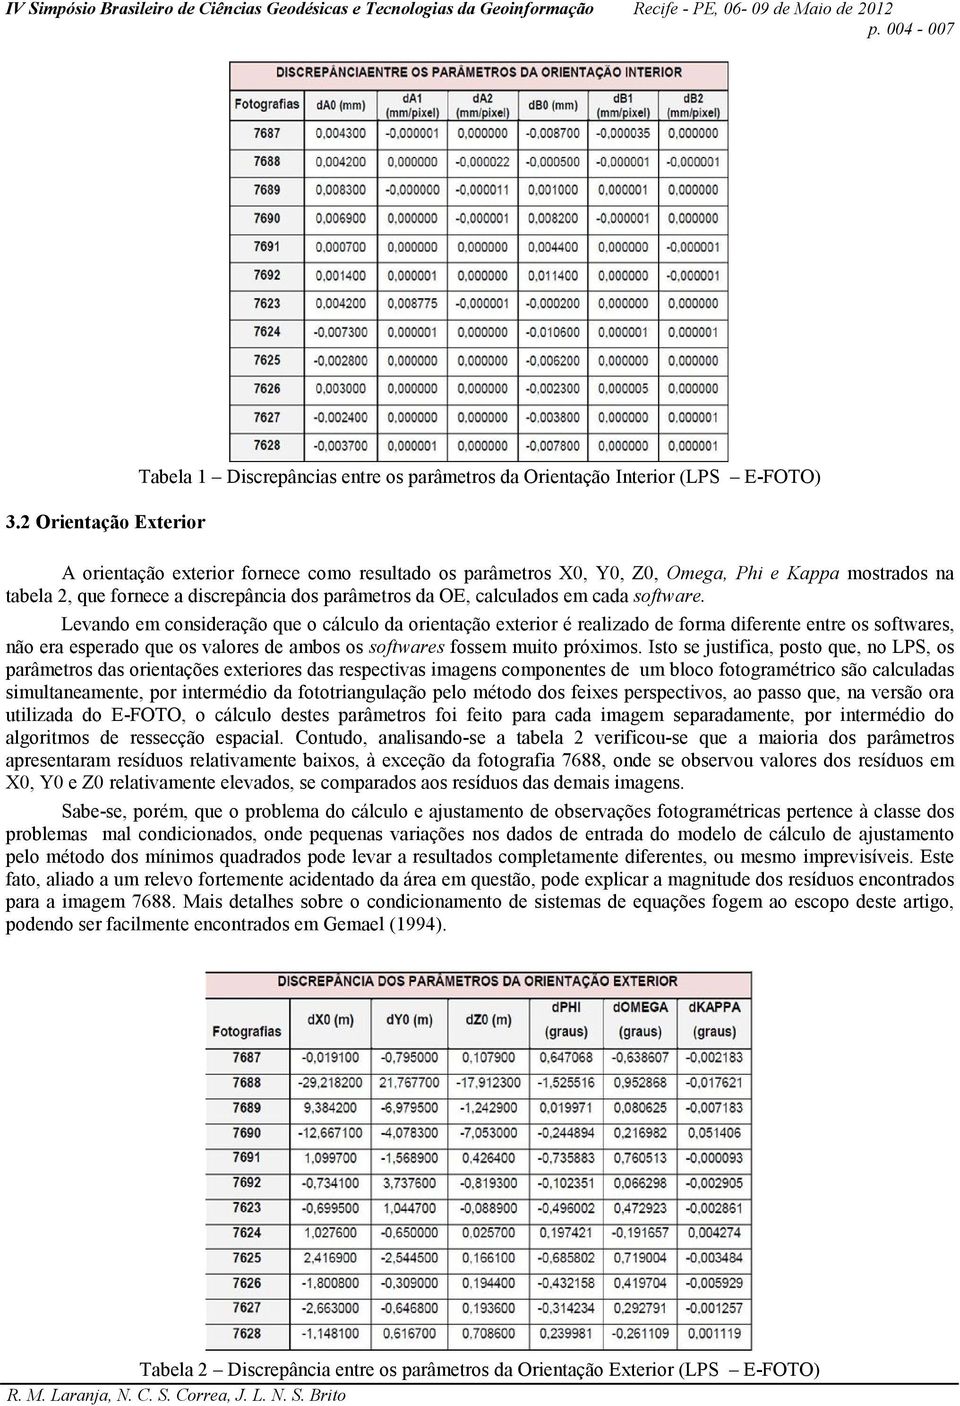 mostrados na tabela 2, que fornece a discrepância dos parâmetros da OE, calculados em cada software.